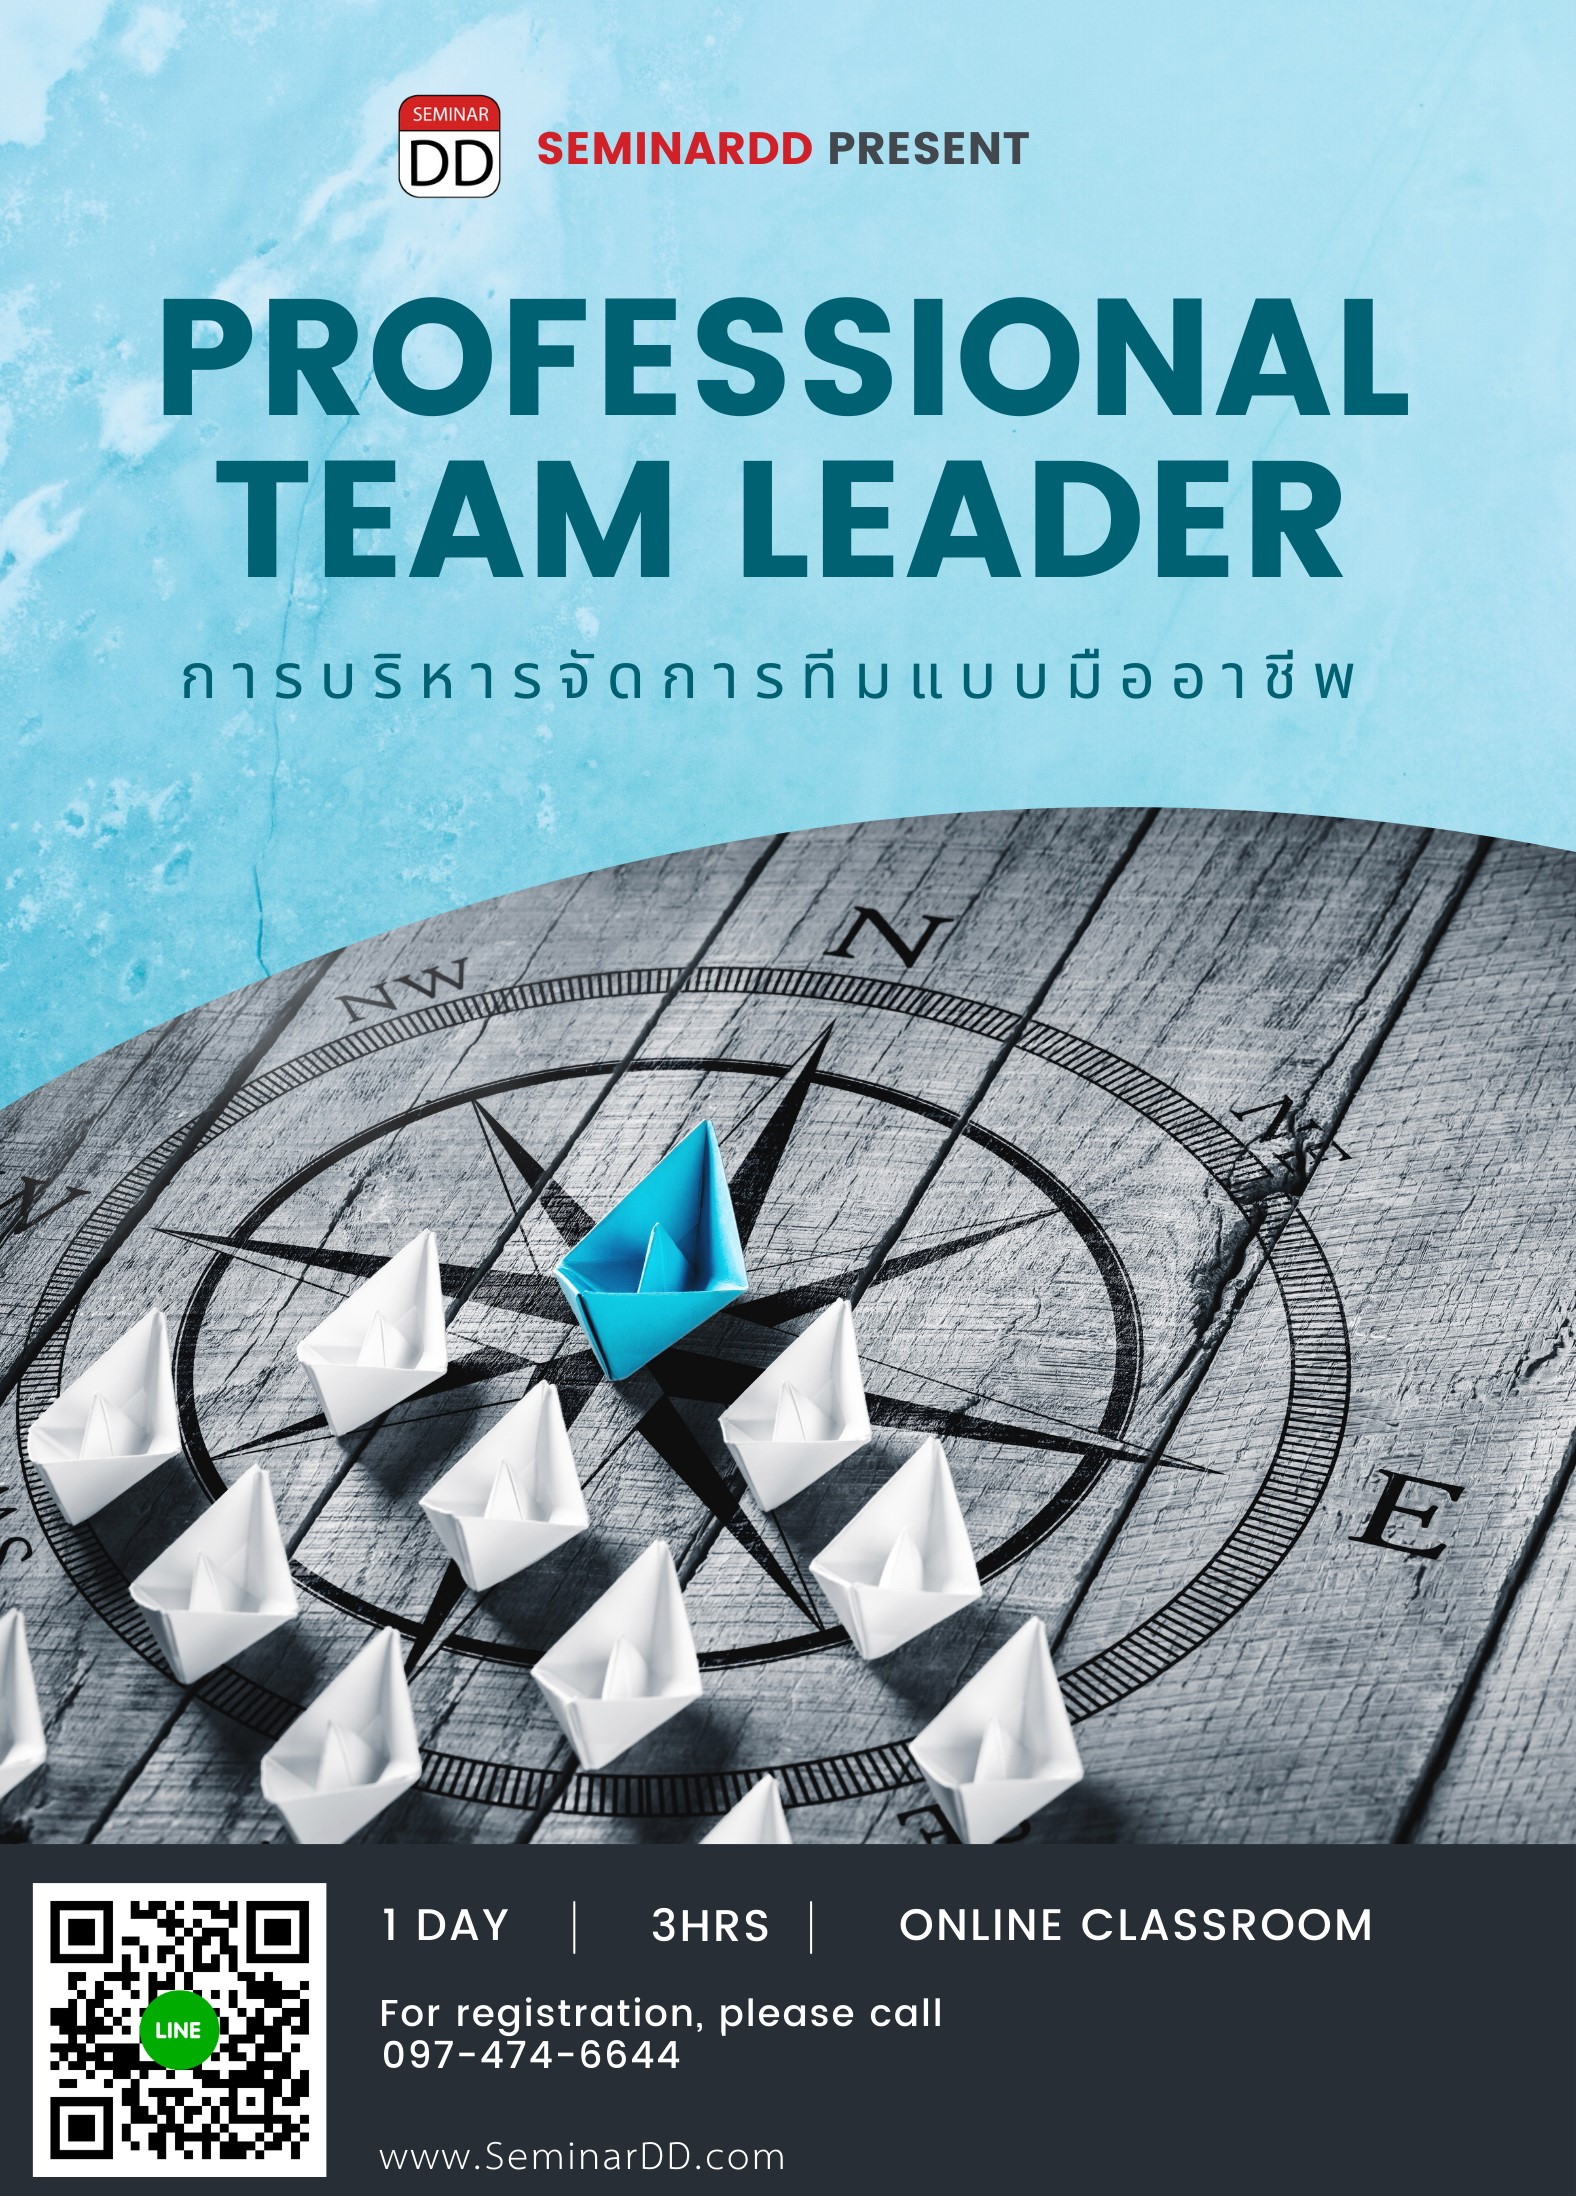 การบริหารจัดการทีมแบบมืออาชีพ Professional Team Leader